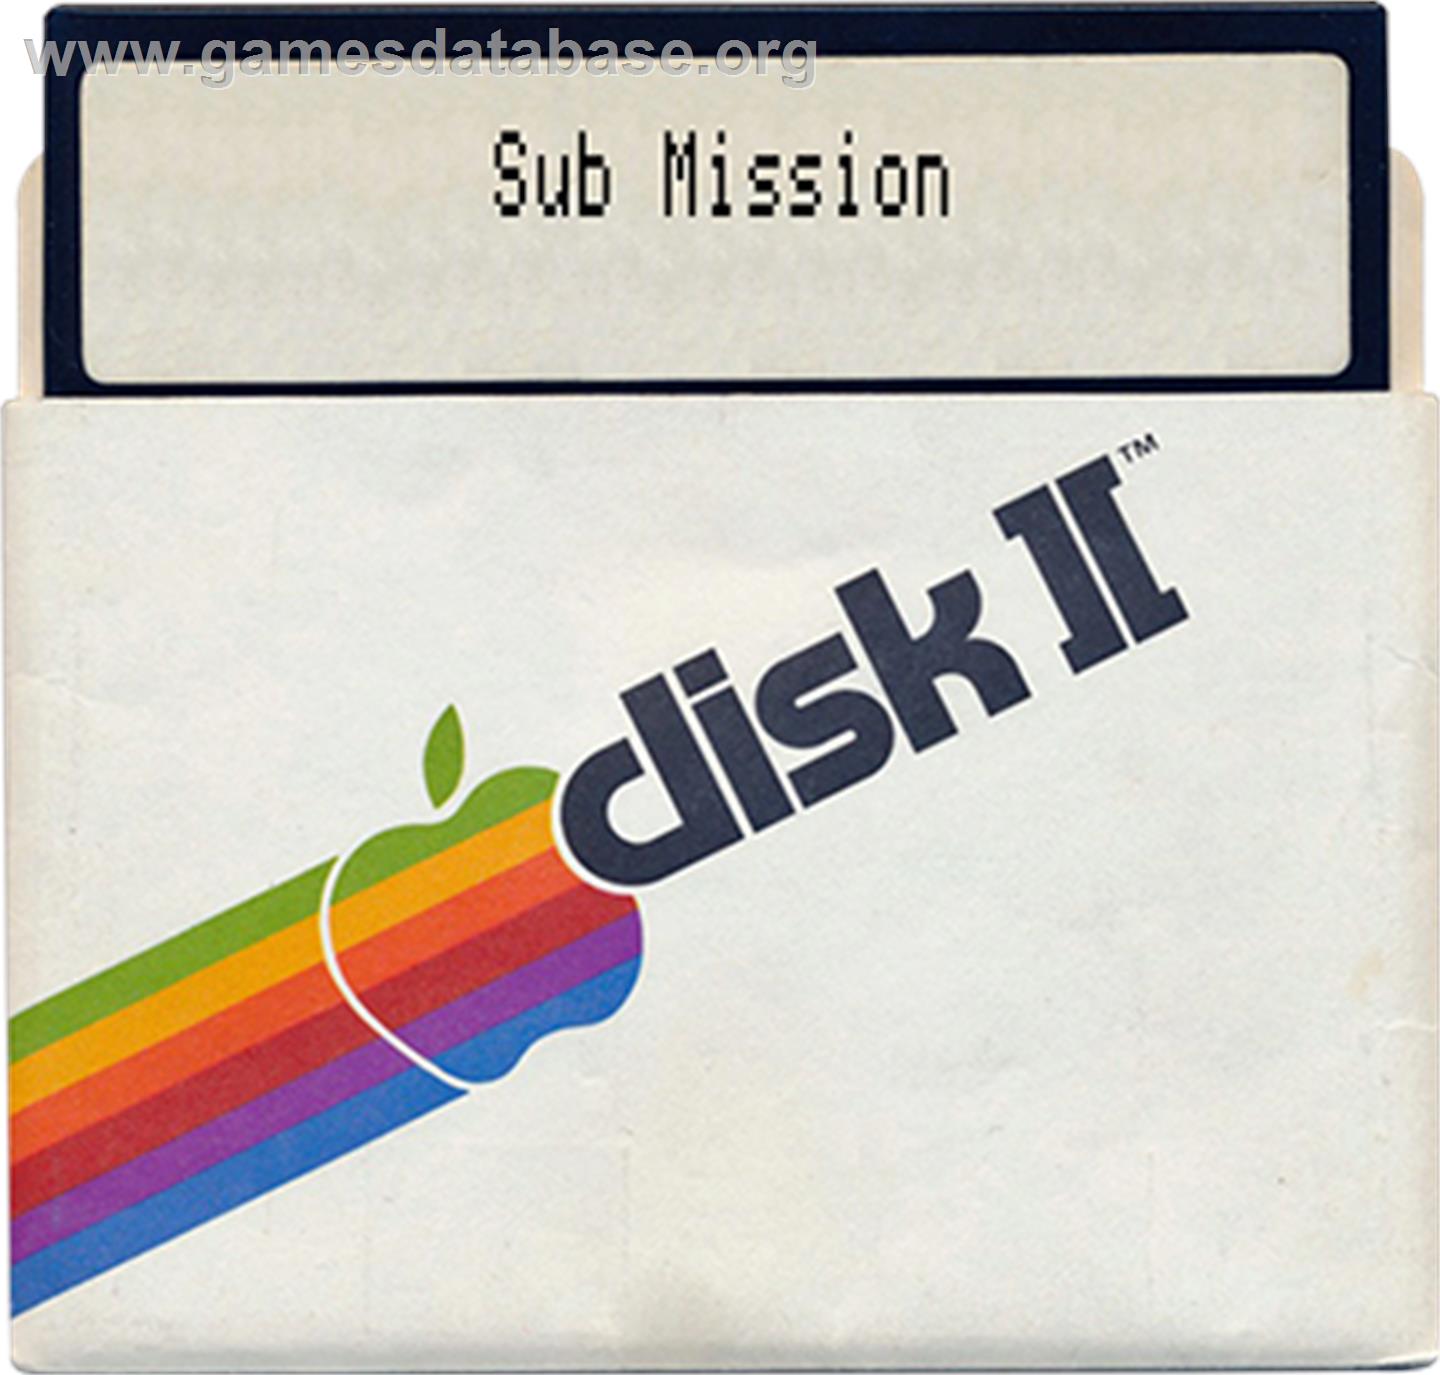 Sub Mission - Apple II - Artwork - Disc